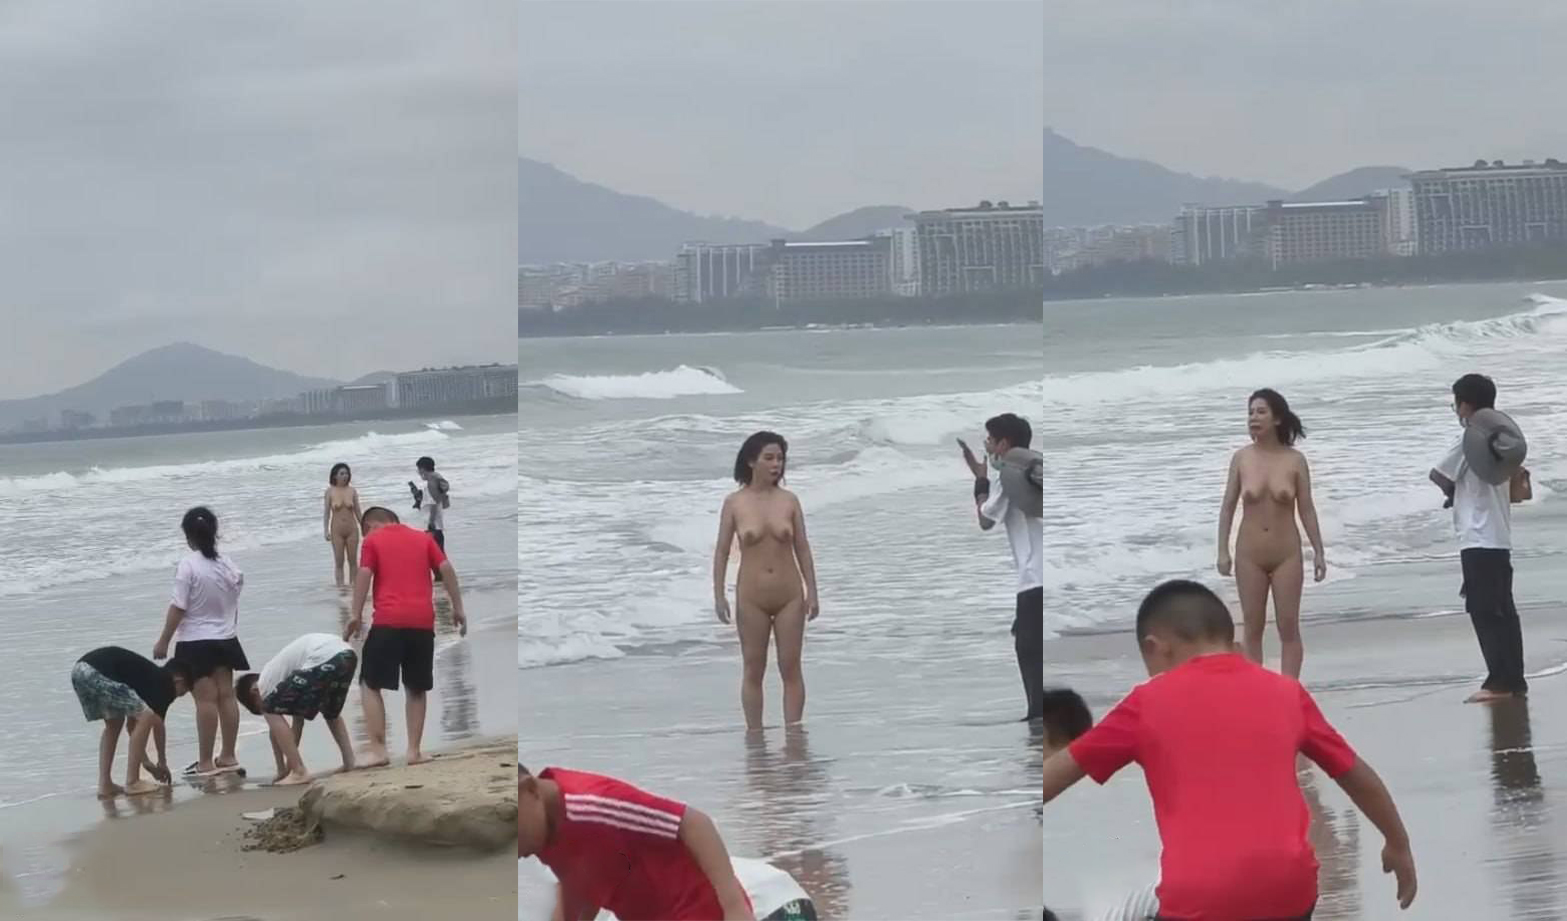 Douyin Chigua ngày 9 tháng 4 Một người phụ nữ khỏa thân được phát hiện trên bãi biển ở Vịnh Tam Á, Hải Nam, hoàn toàn lộ liễu trước mặt một đứa trẻ.